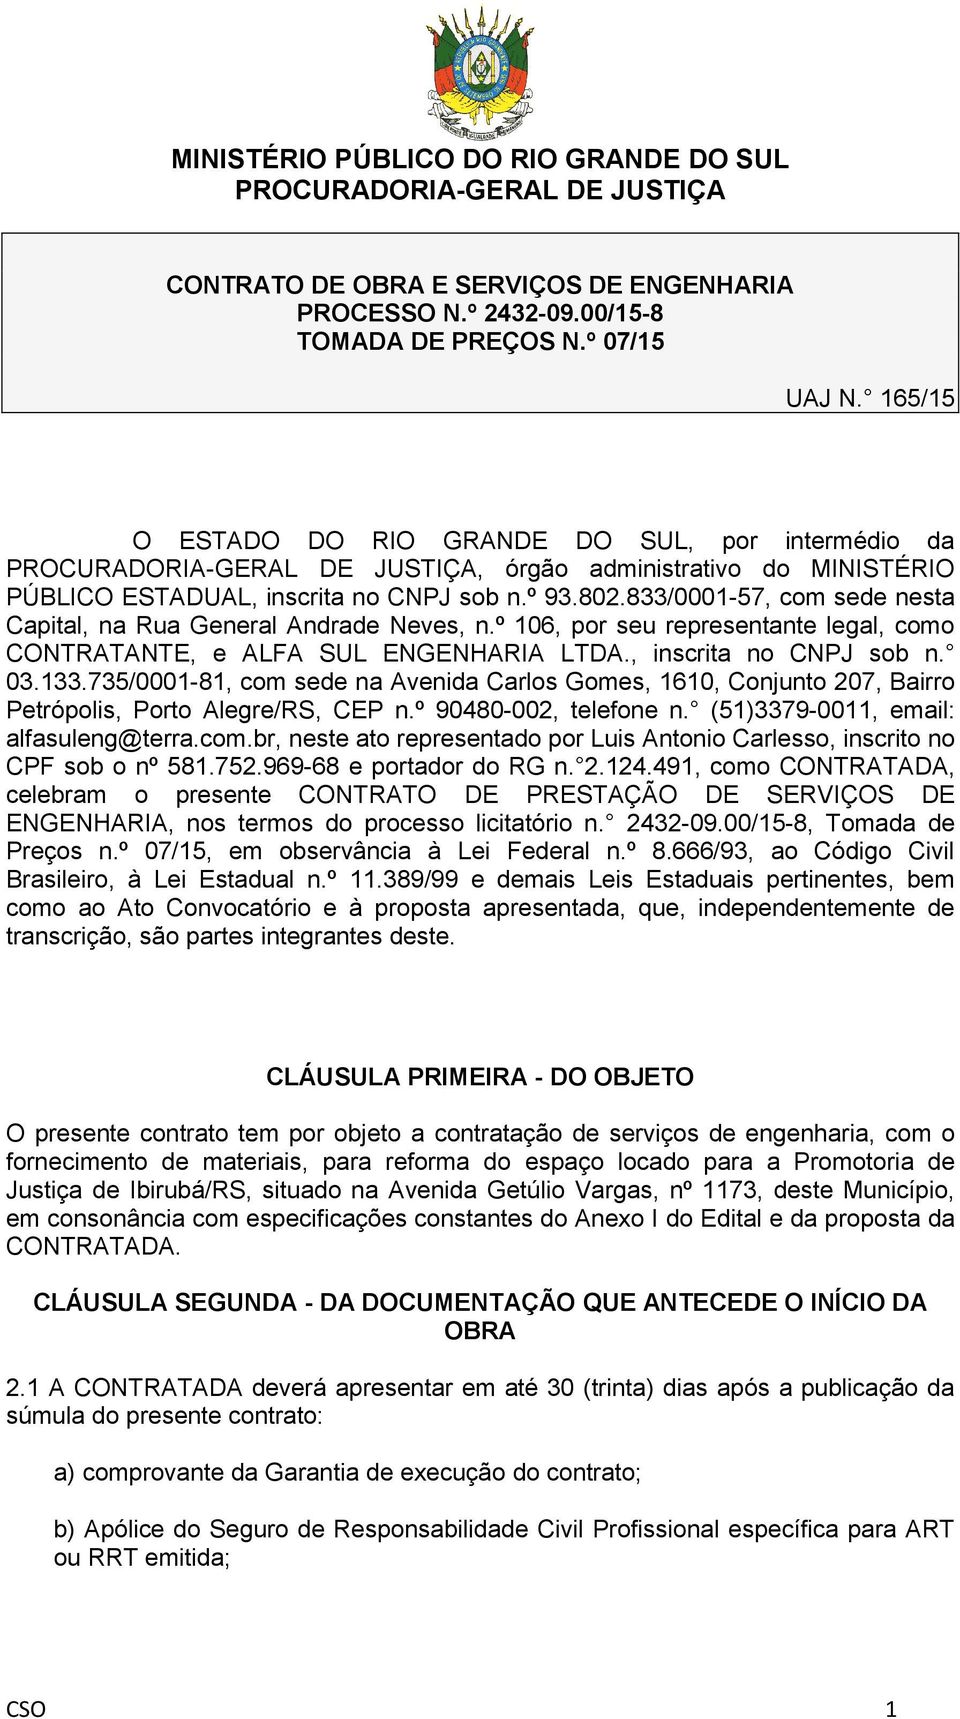 833/0001-57, com sede nesta Capital, na Rua General Andrade Neves, n.º 106, por seu representante legal, como CONTRATANTE, e ALFA SUL ENGENHARIA LTDA., inscrita no CNPJ sob n. 03.133.